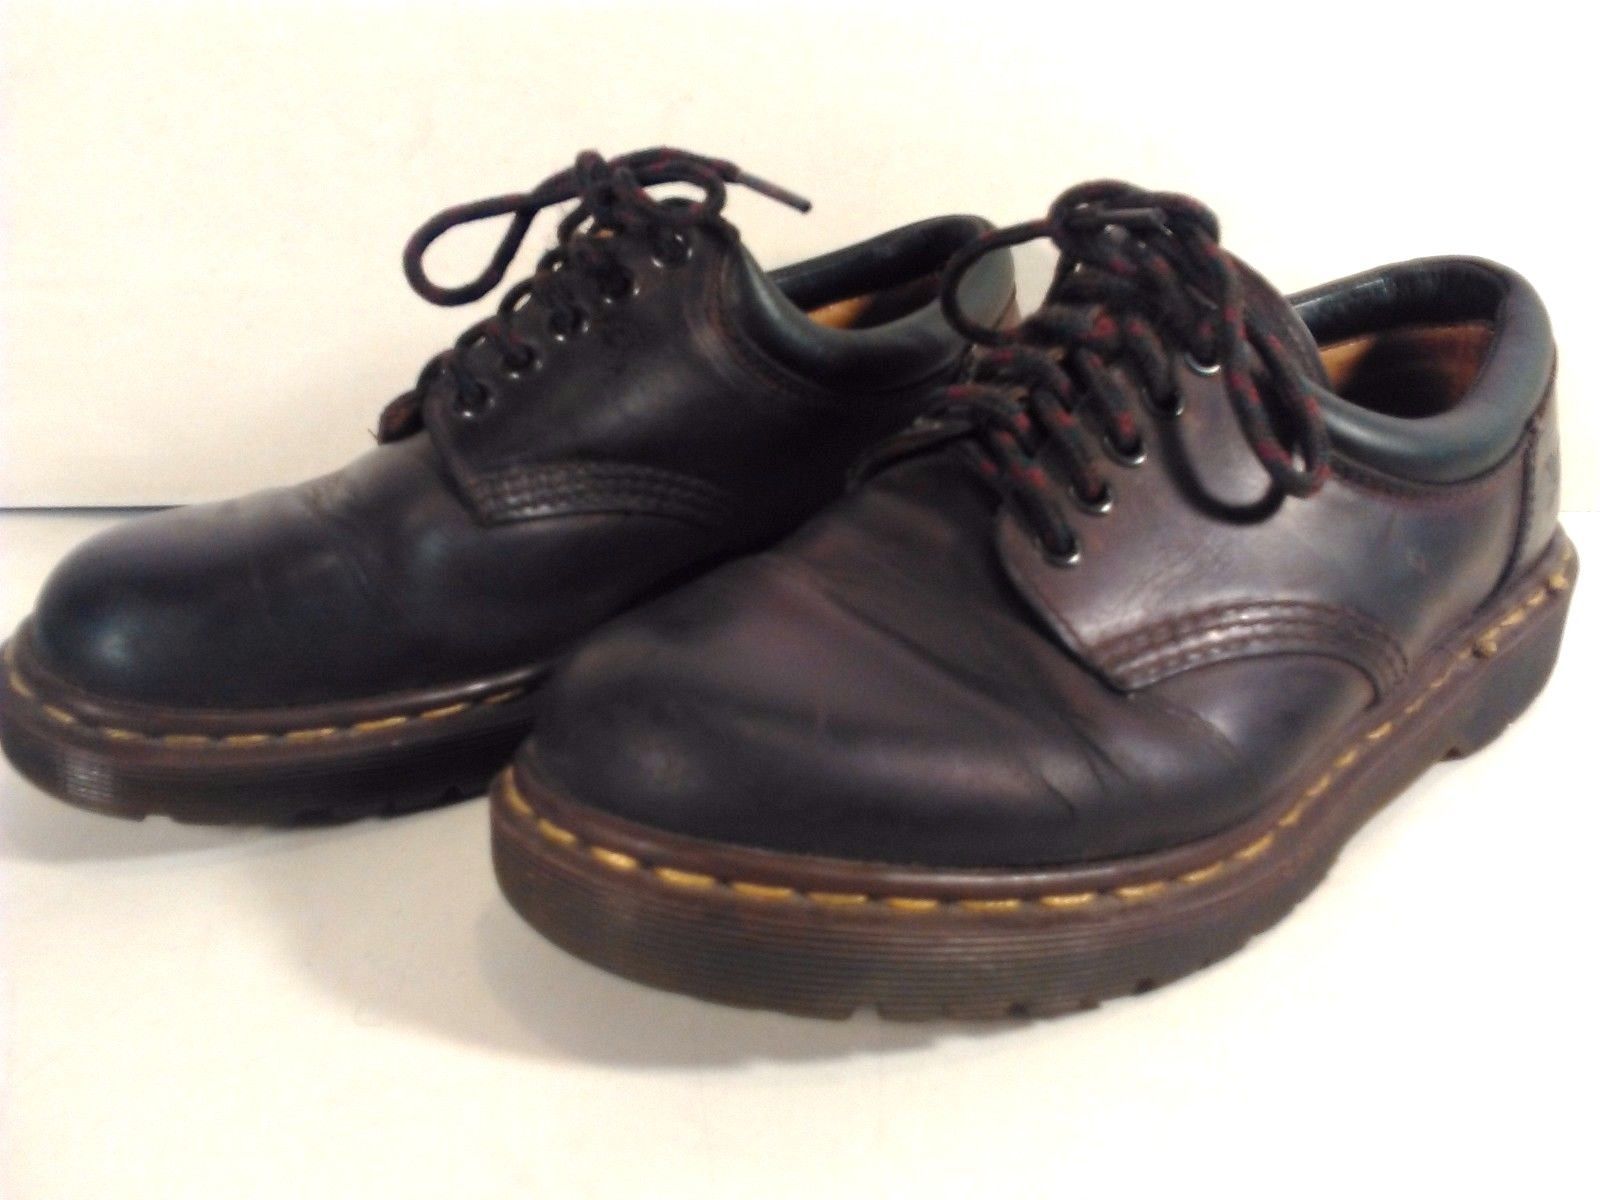 dr martens shoes size 7